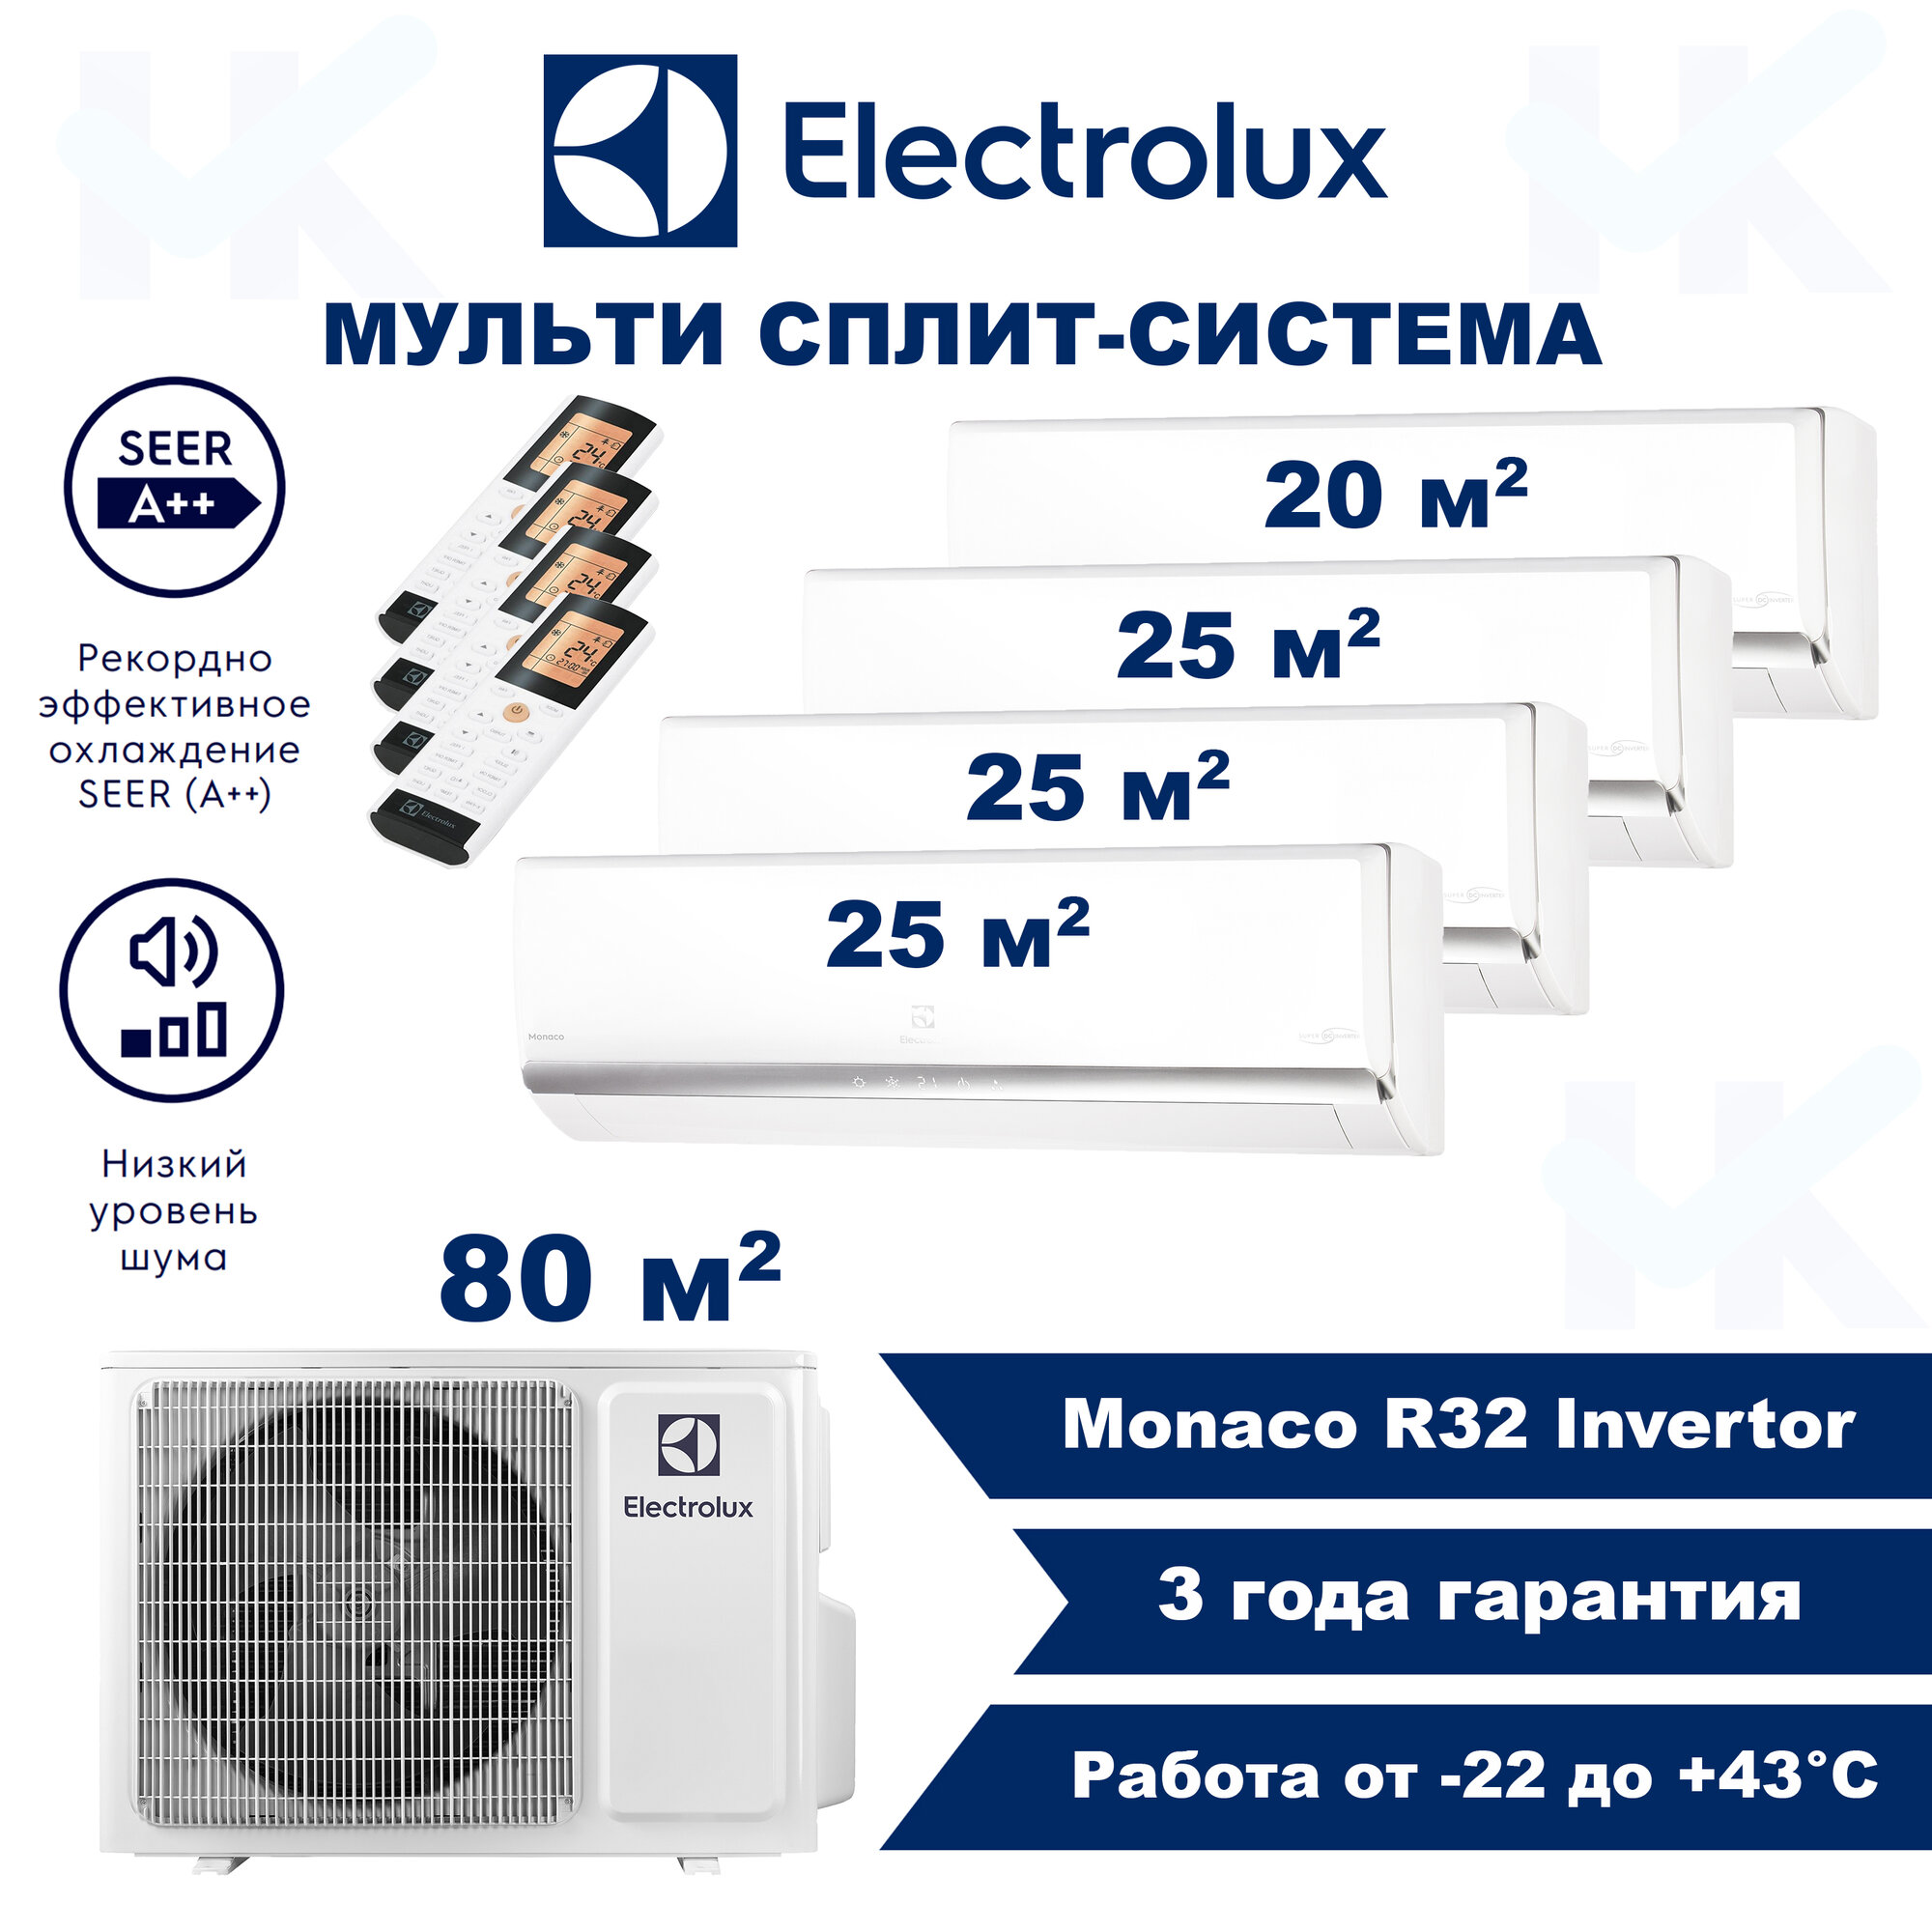 Инверторная мульти сплит-система ELECTROLUX серии Monaco на 4 комнаты (20 м2 + 25 м2 + 25 м2 + 25 м2) с наружным блоком 80 м2 Попеременная работа